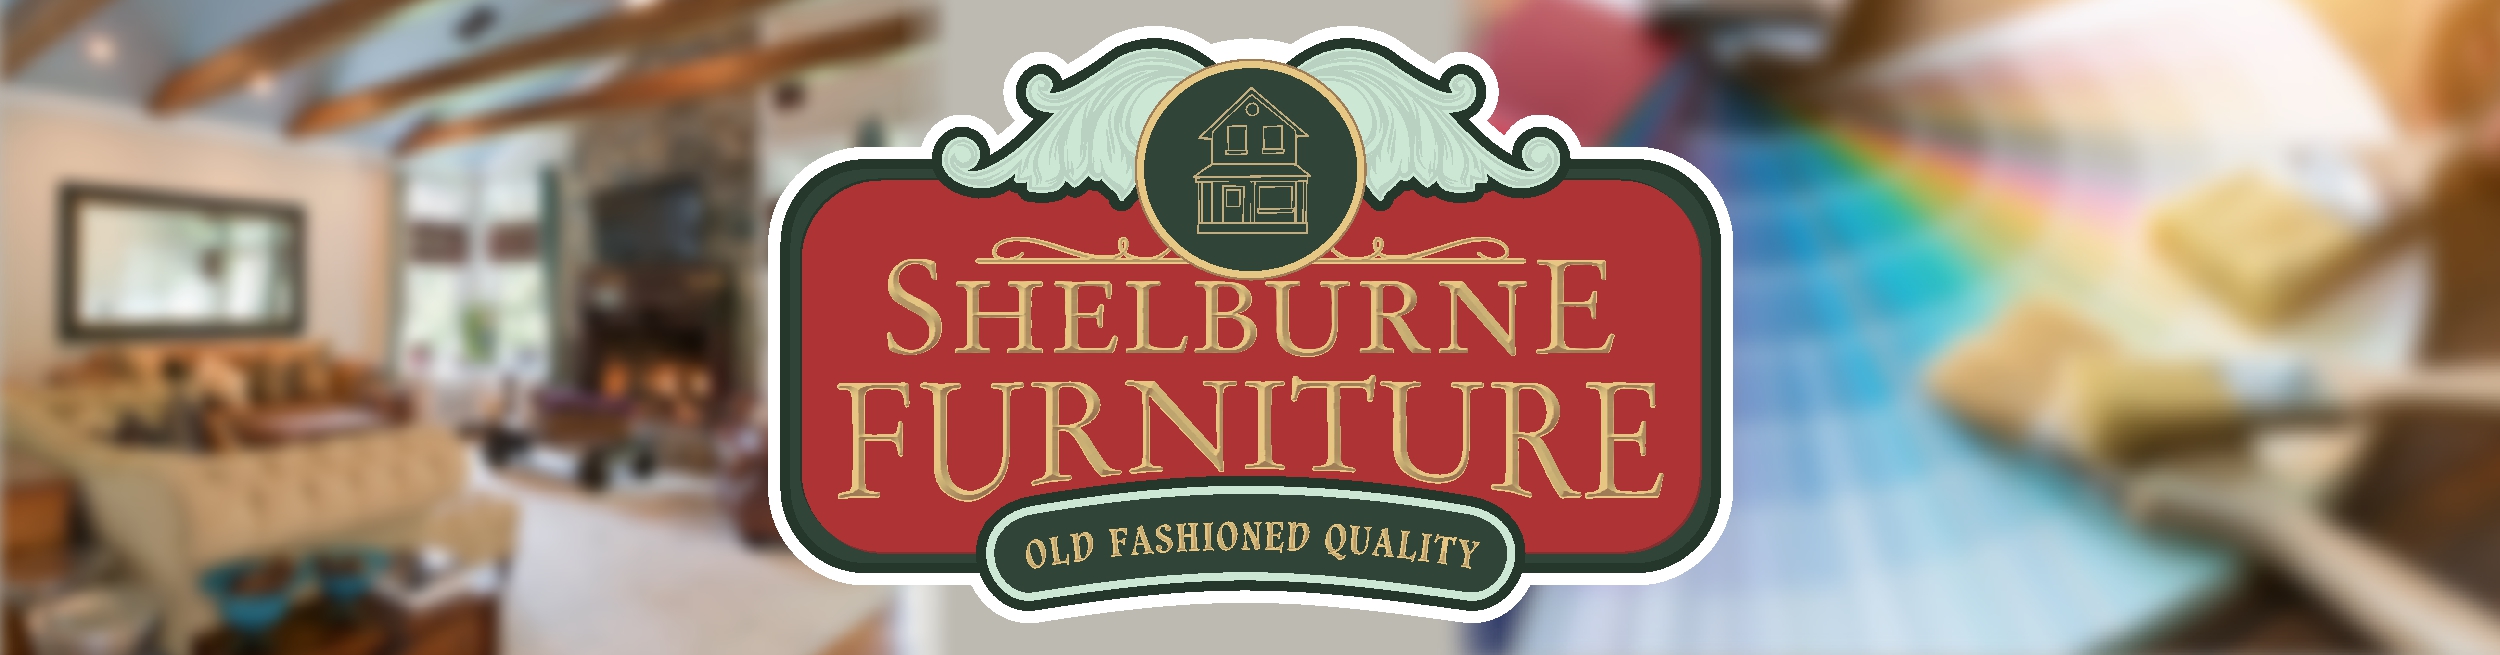 Shelburne Furniture